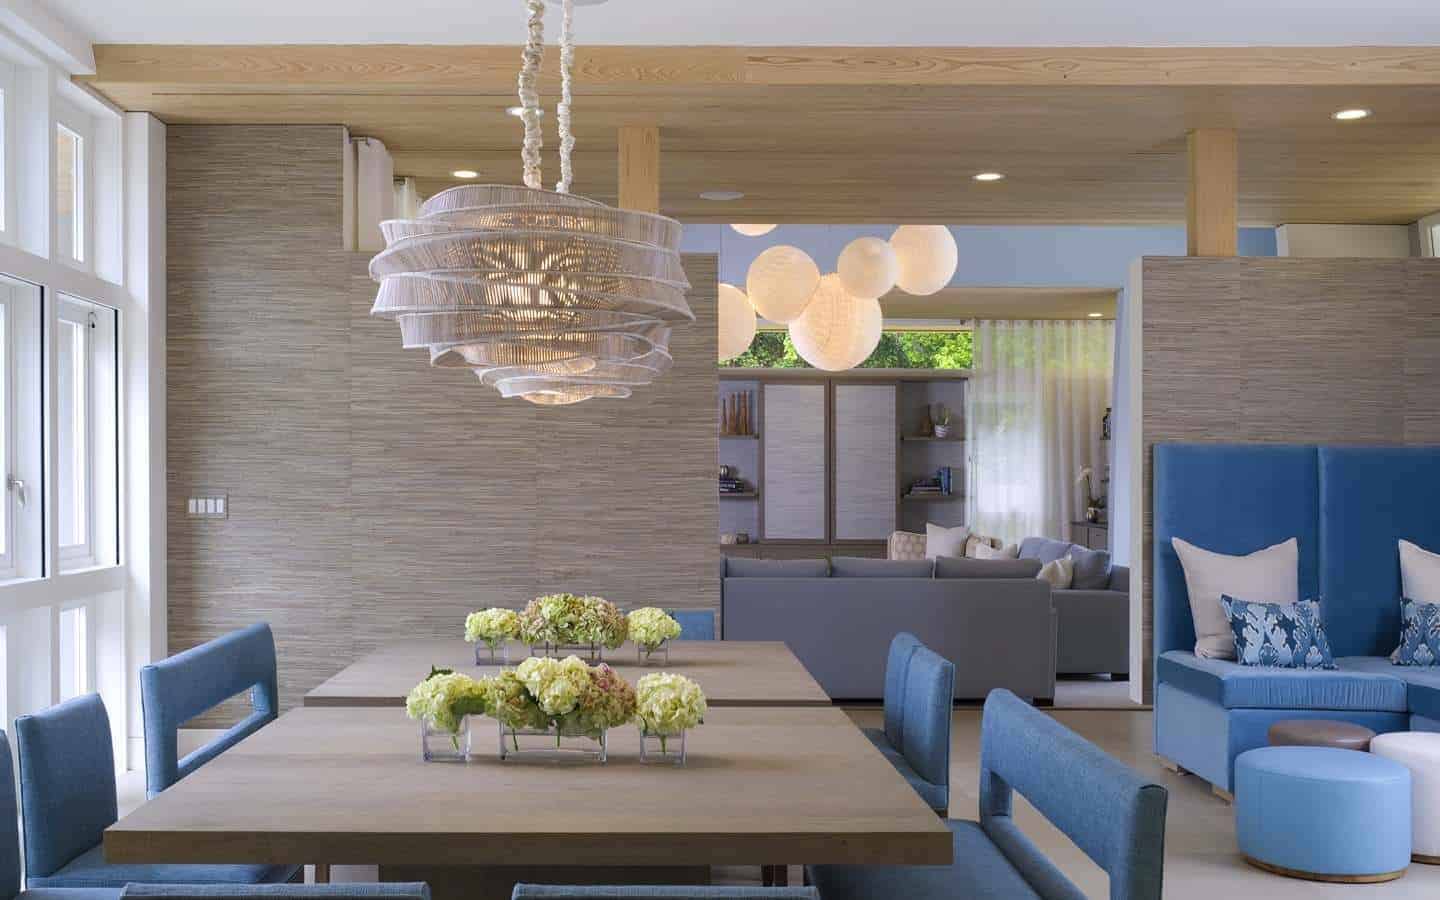 这间通风明亮的厨房有一个裸露的木质天花板，搭配着棕色的木墙，与方形餐桌相匹配，餐桌上有一个带有乡村风帽的奇特吊灯。这些与蓝色天鹅绒椅垫形成对比。